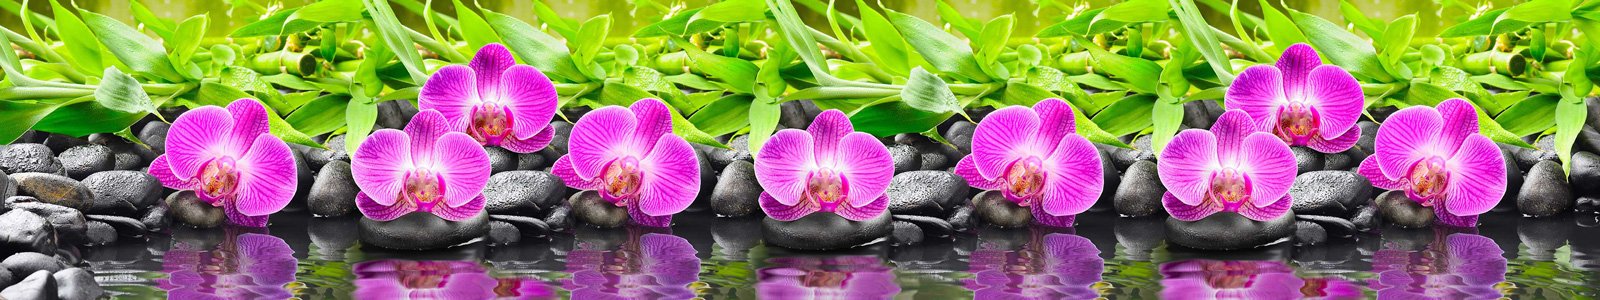 №7220 - Пурпурные орхидеи на базальтовых камушках